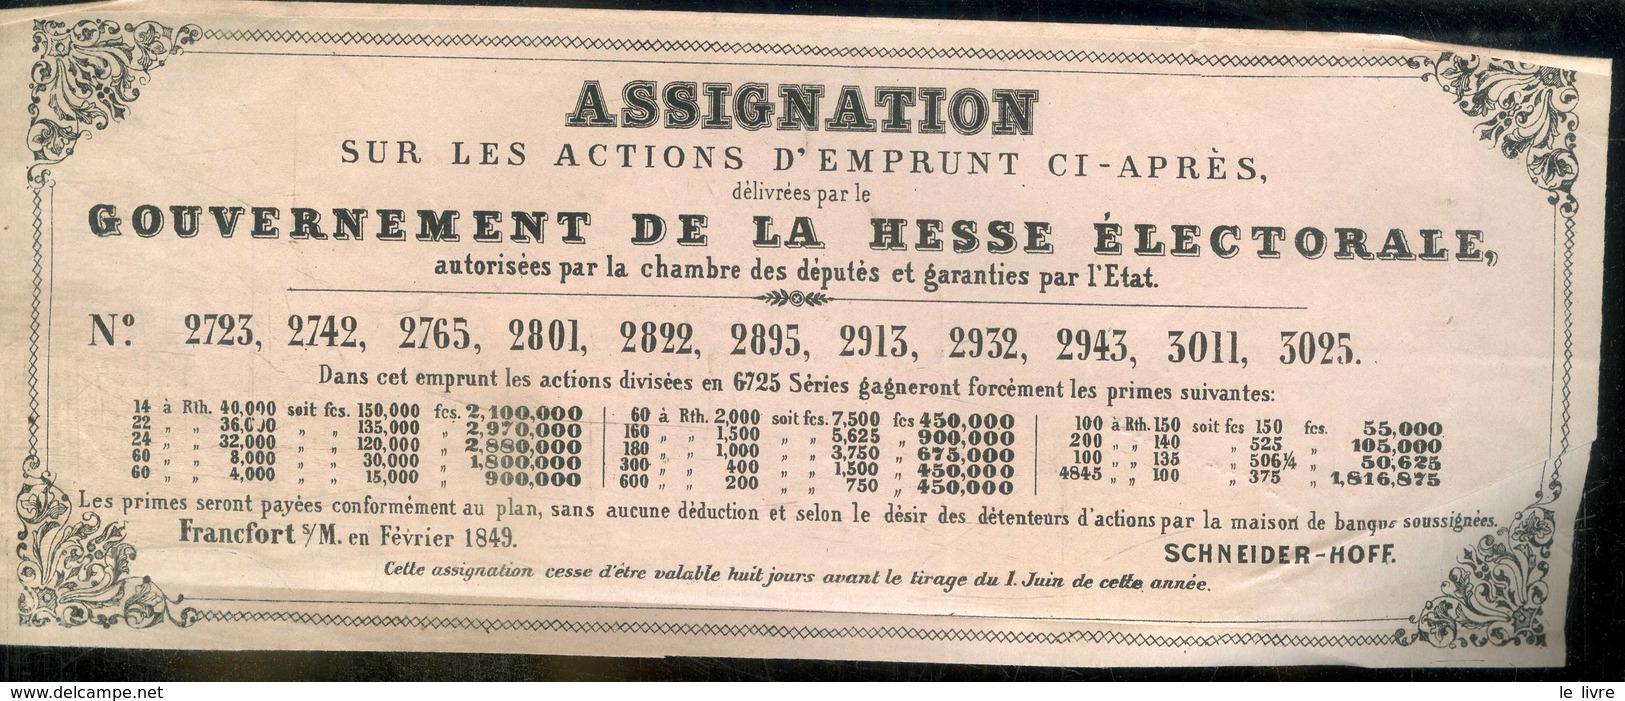 FRANCFORT 1849. GOUVERNEMENT DE LA HESSE ELECTORALE. ASSIGNATION SUR ACTIONS D'EMPRUNT. BANQUE SCHNEIDER-HOFF.